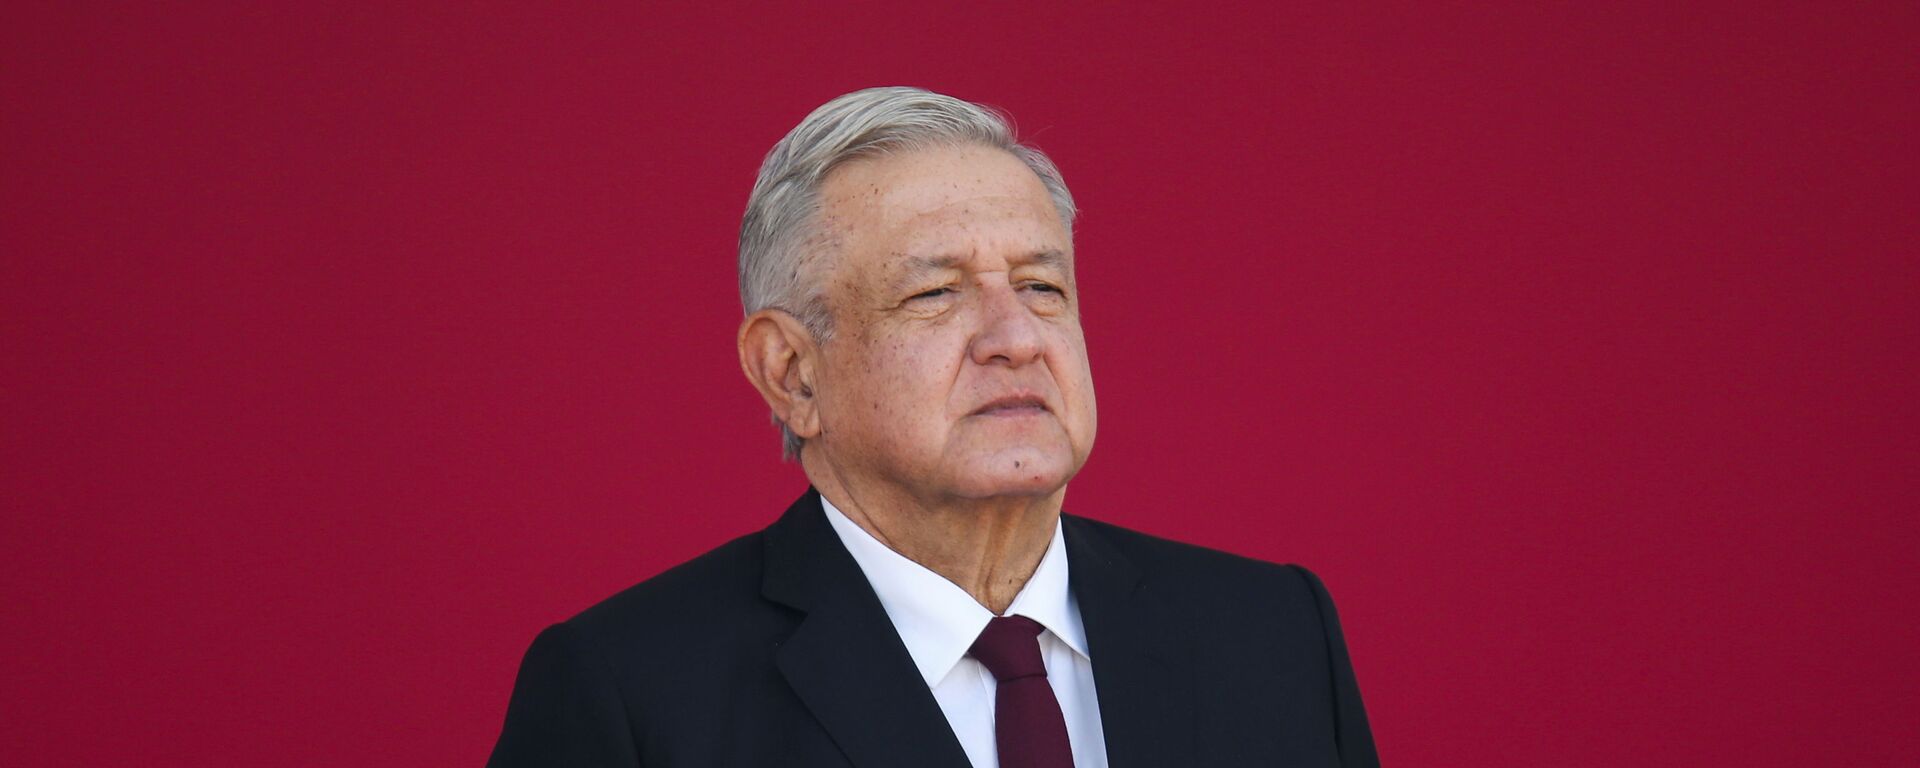 Andrés Manuel López Obrador, presidente de México - Sputnik Mundo, 1920, 28.04.2021